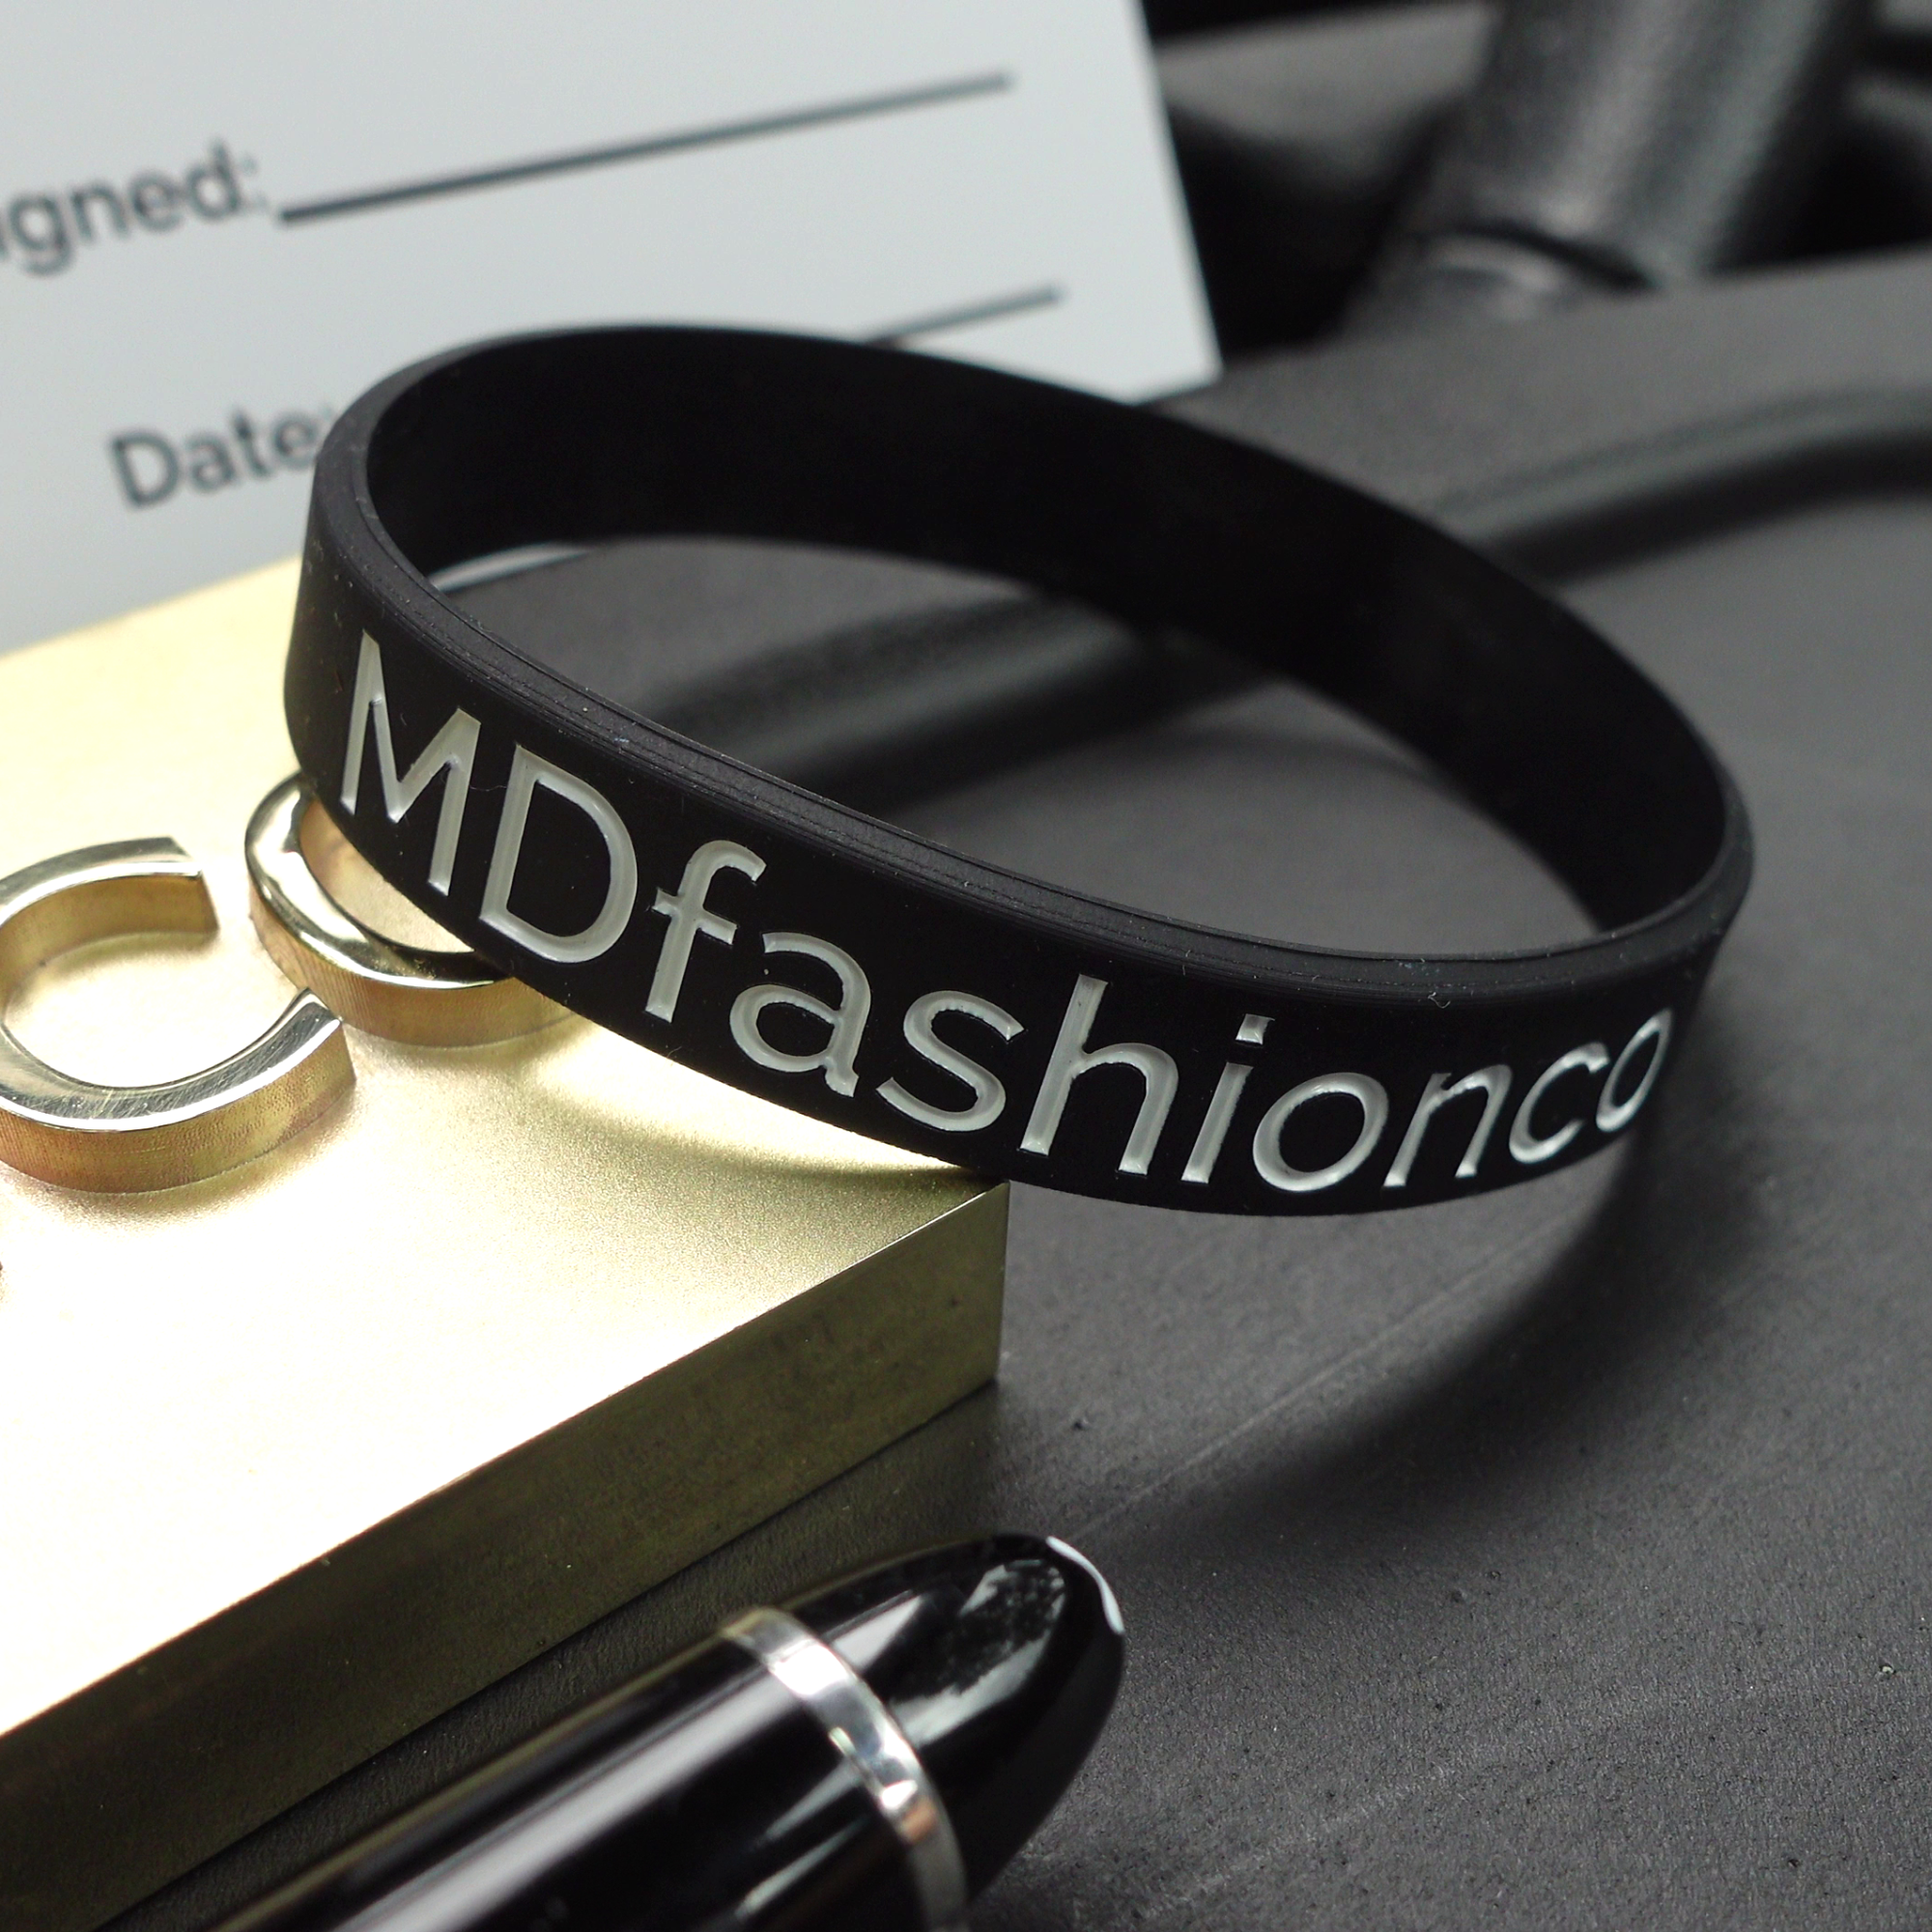 MDfashionco Bracelet (FREE WORLDWIDE SHIPPING)